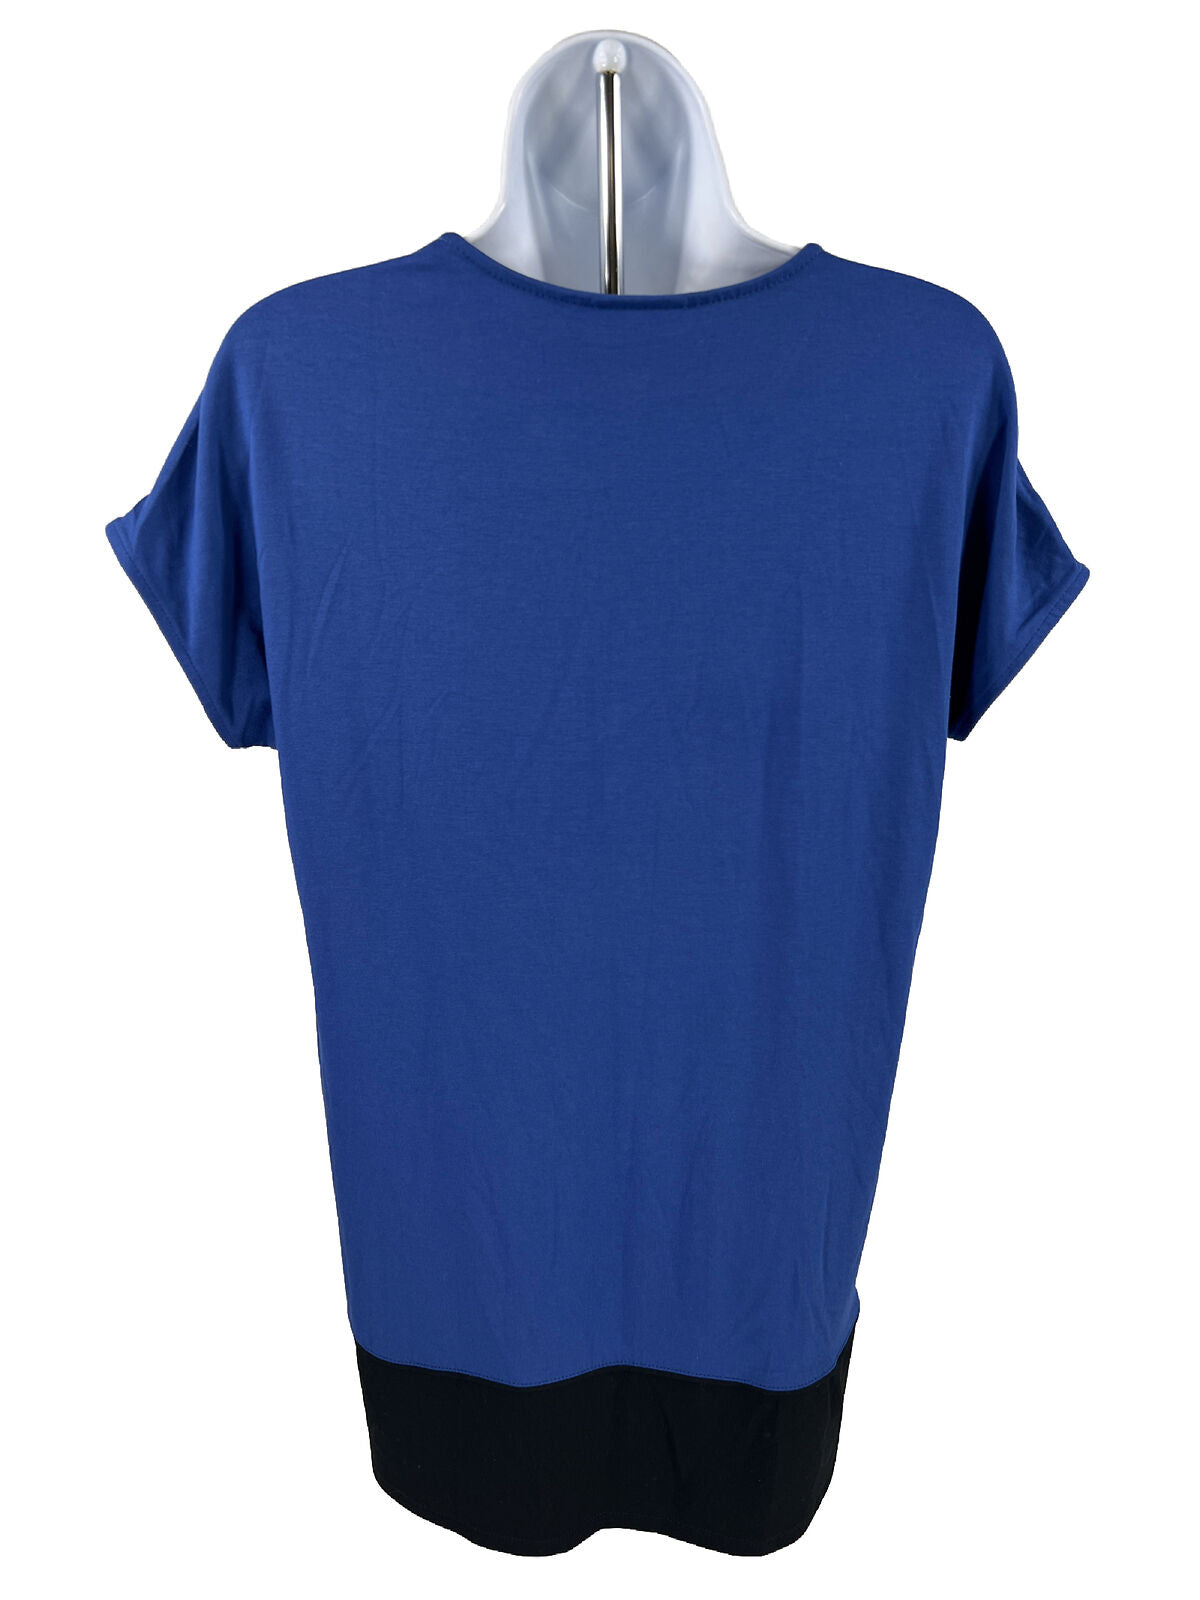 J. Jill Women's Blue Short Sleeve Long Tunic Top Shirt - XS